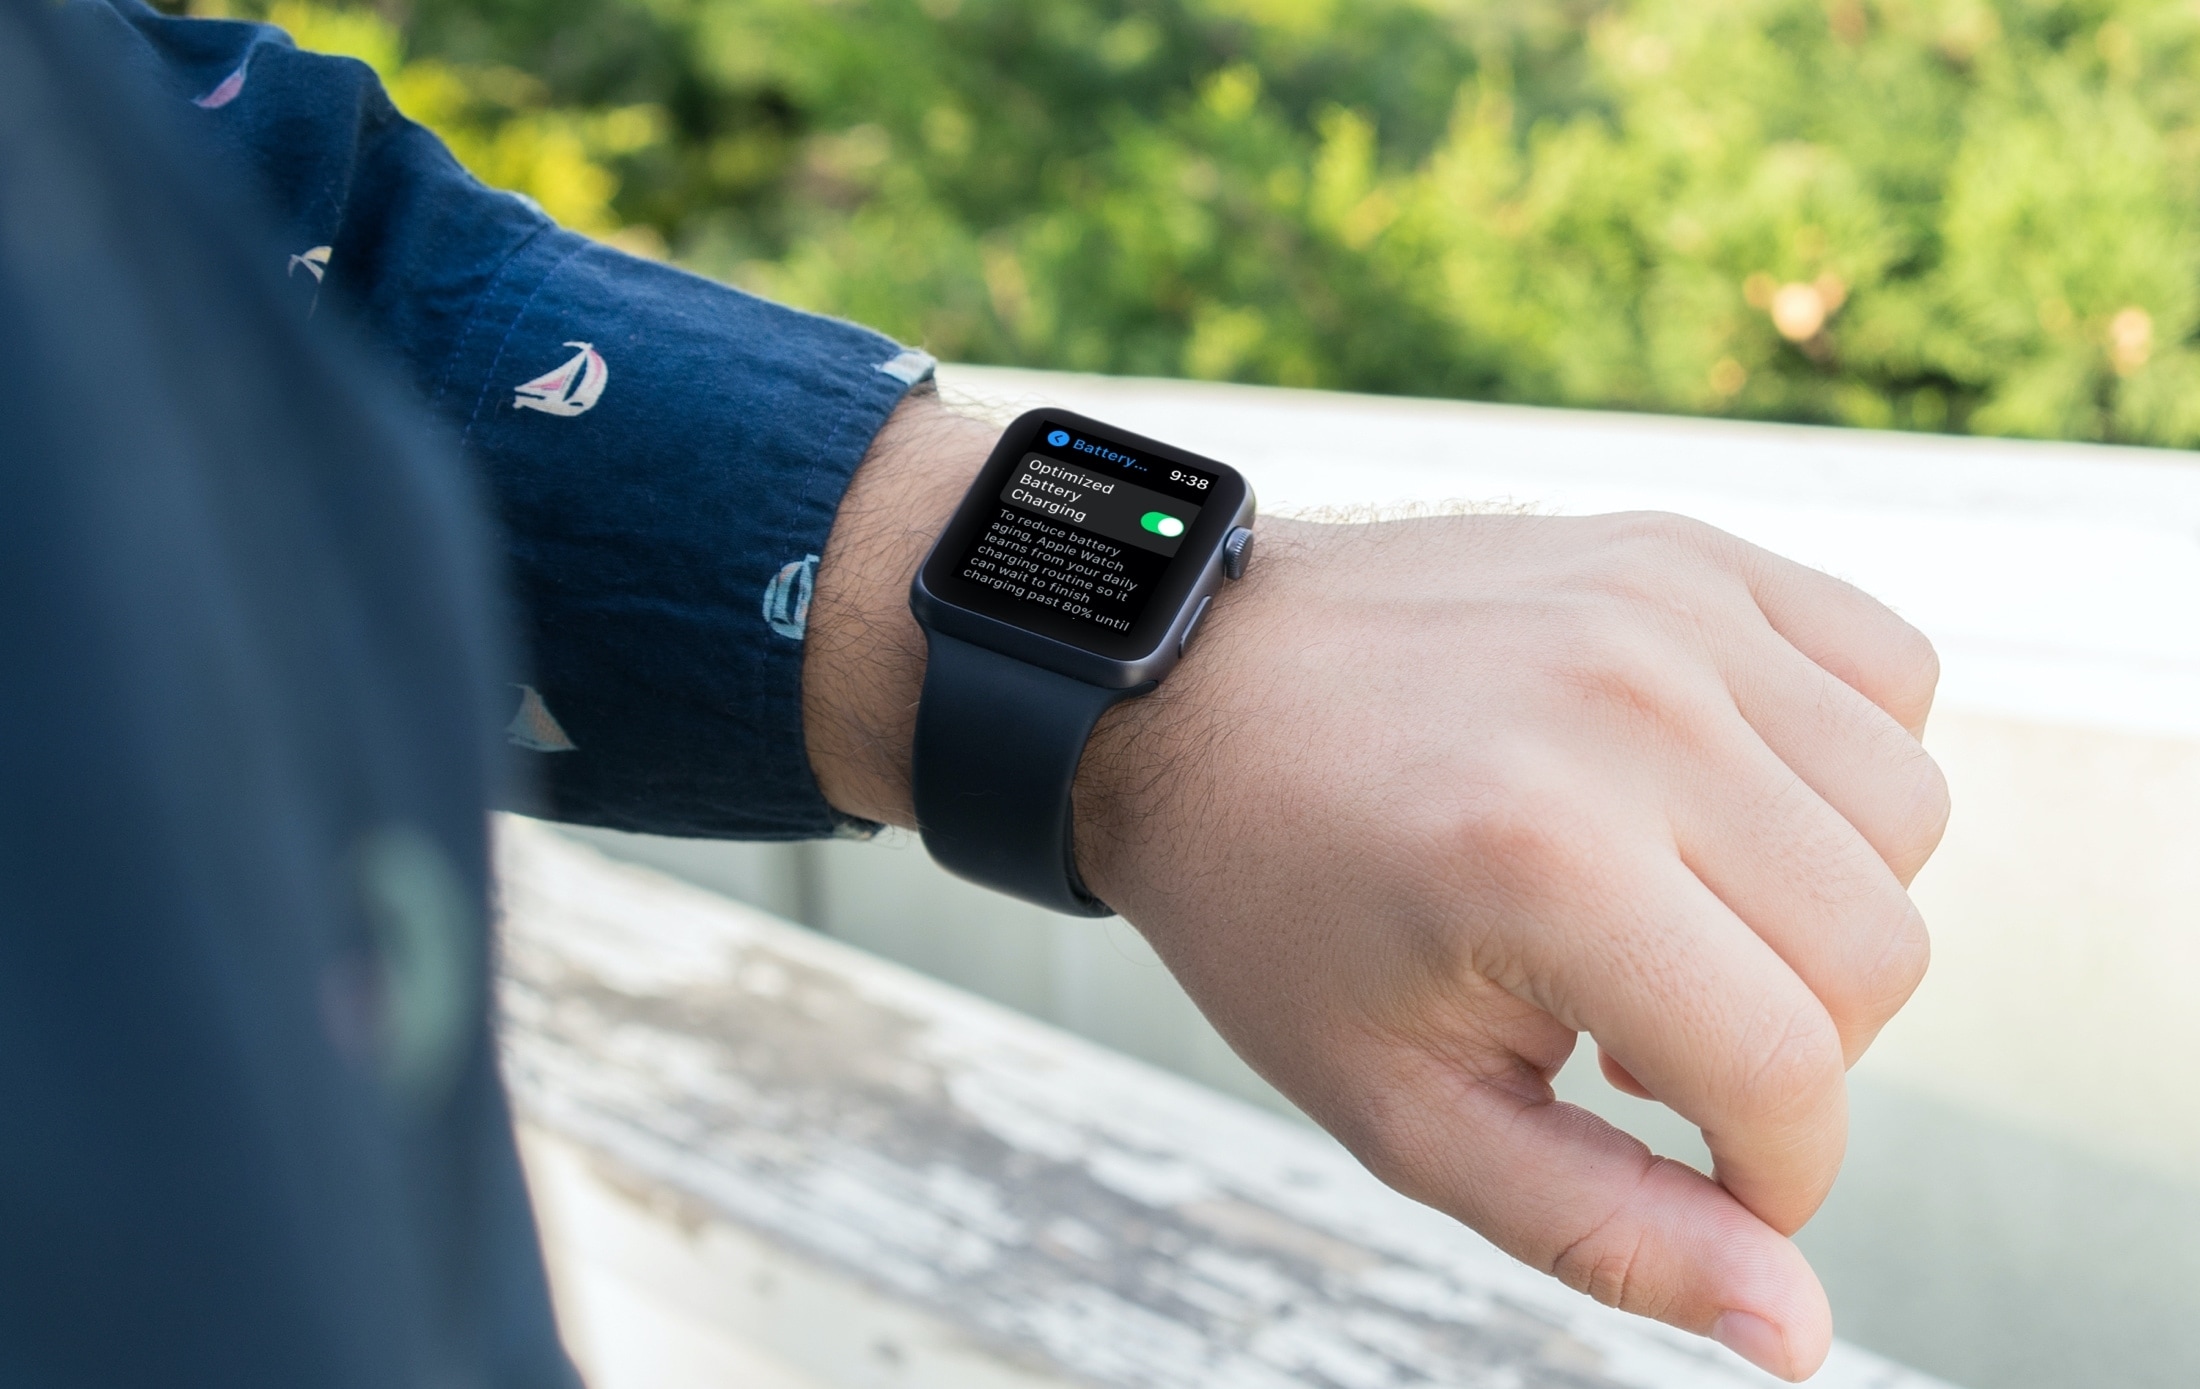 Chargement optimisé de la batterie activé sur Apple Watch